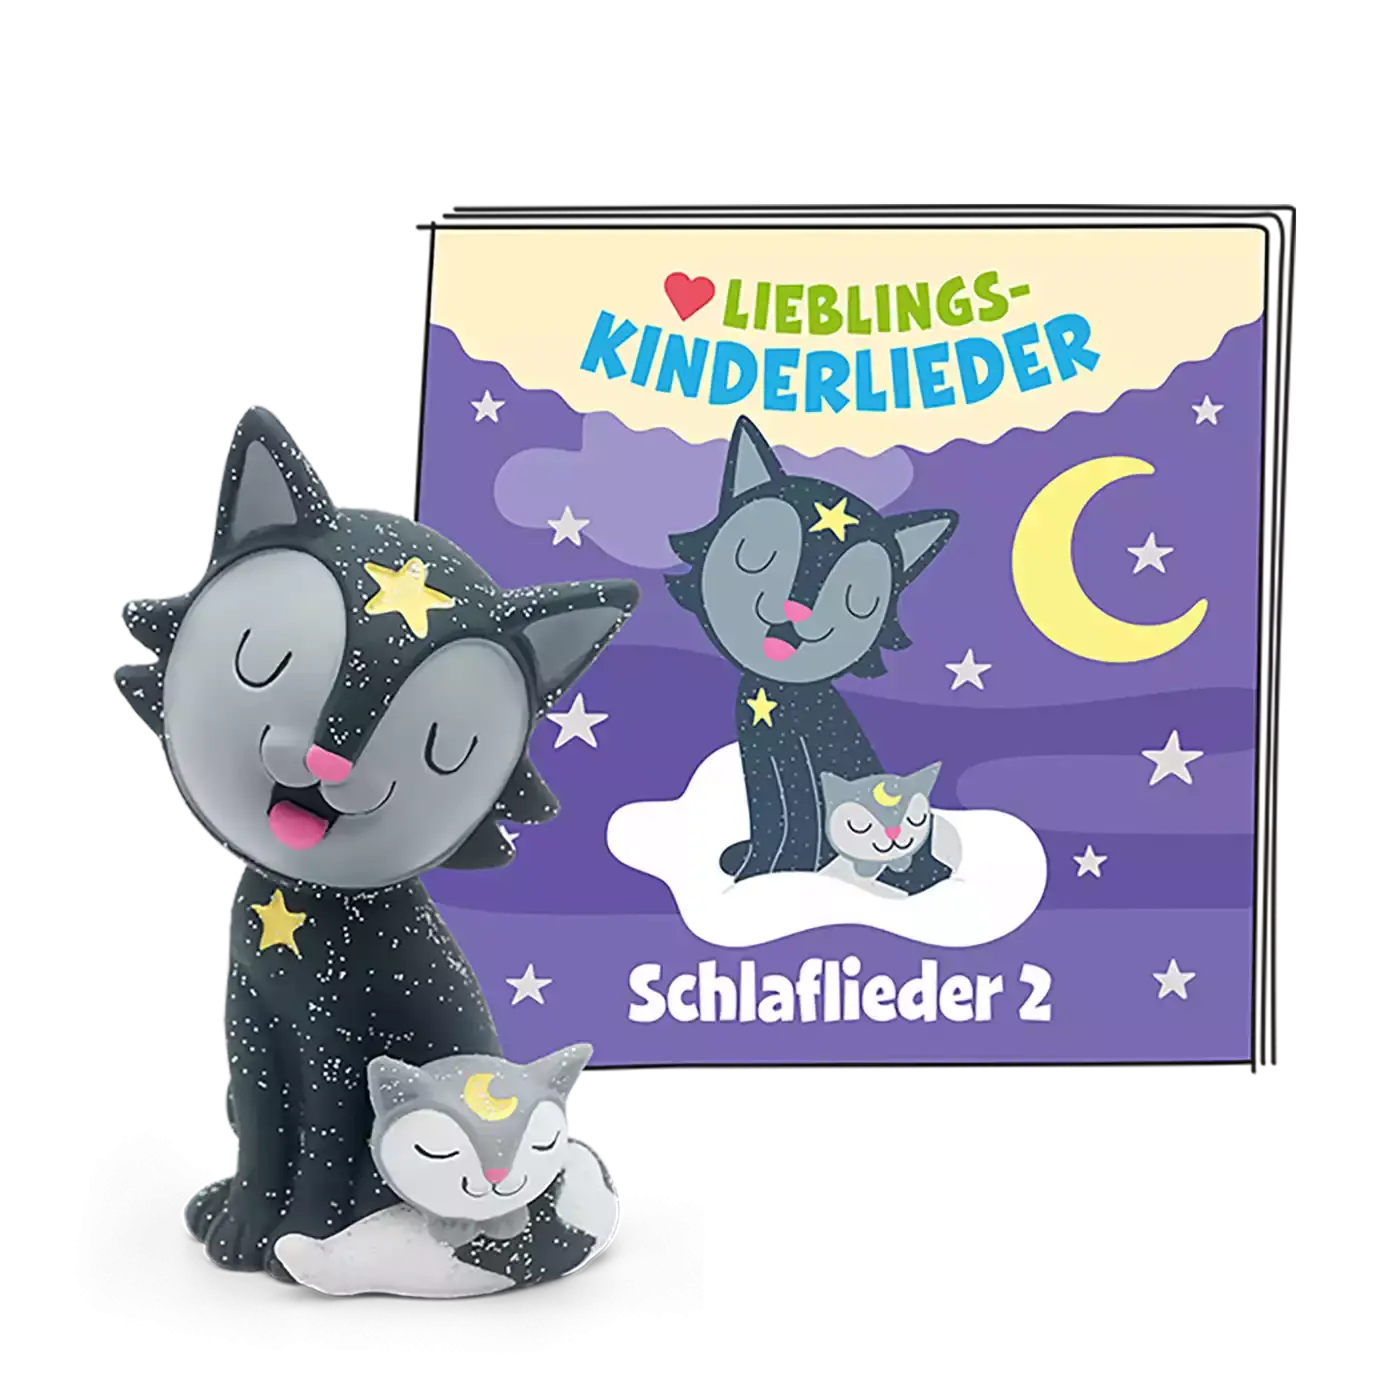 Lieblings-Kinderlieder - Schlaflieder 2 tonies 2000581999104 1